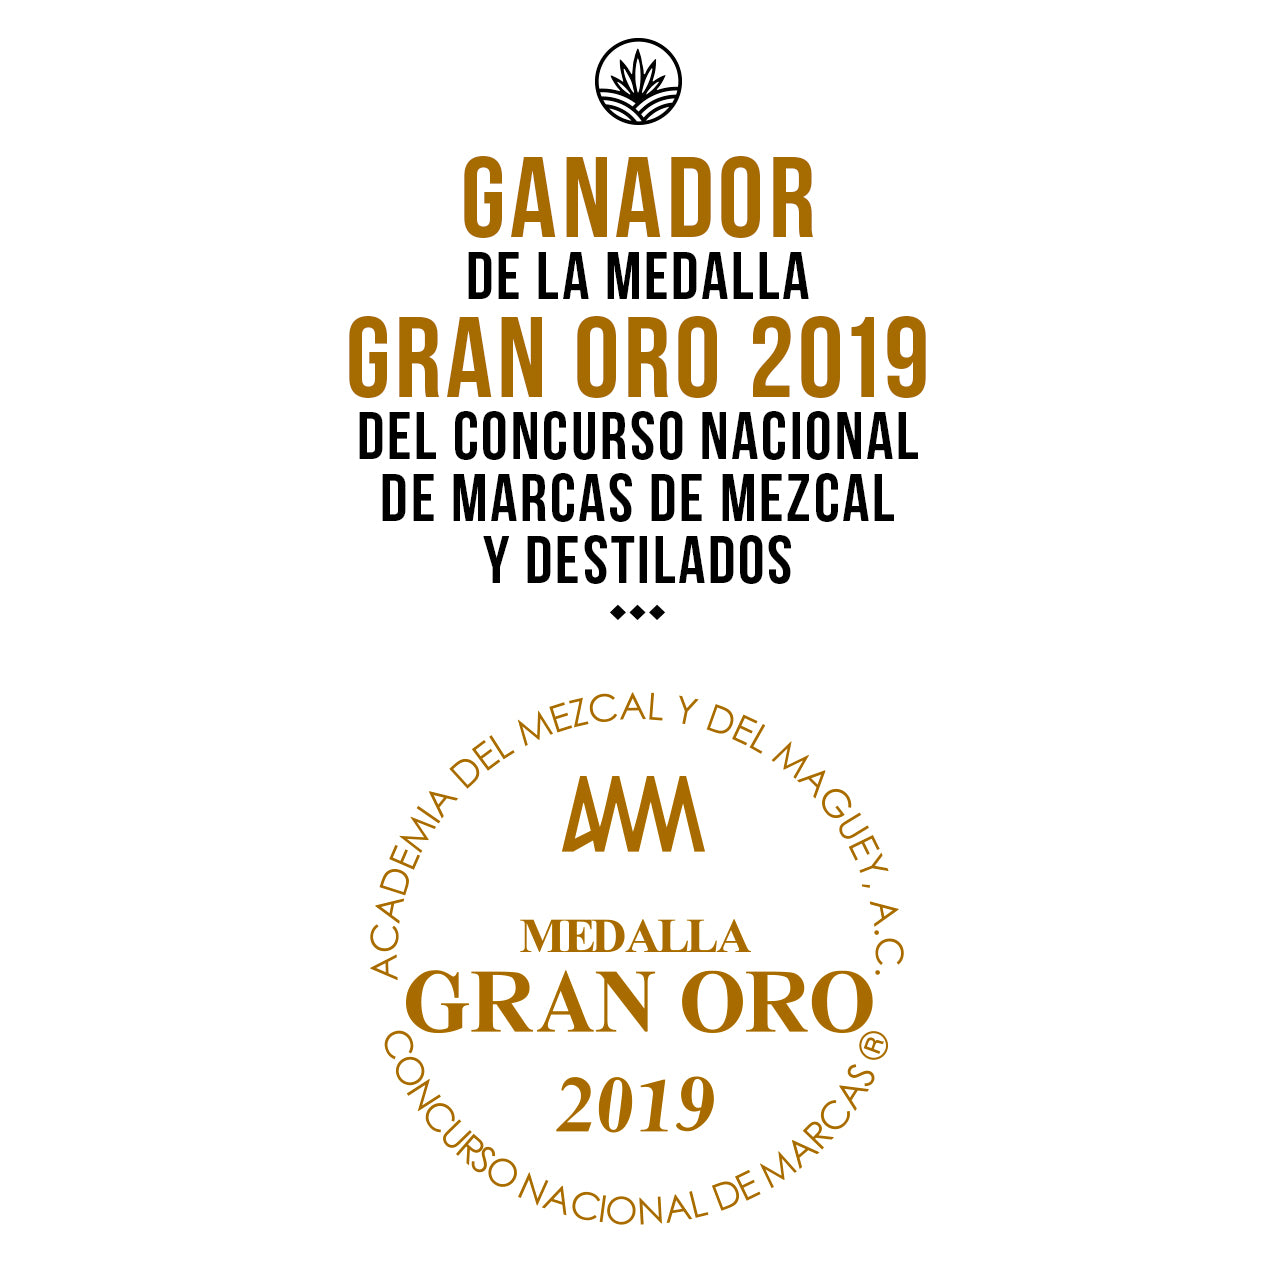 MEZCAL - Considerado como uno de los mejores mezcales de México y del Mundo, MEZCAL DULCE INFIERNO fue galardonado con el mayor reconocimiento que puede obtener un Mezcal en México, el Primer Lugar con Medalla de Gran Oro en el VIII CONCURSO NACIONAL DE MARCAS DE MEZCAL Y DESTILADOS MEXICANOS 2019, organizado anualmente por La Academia del Mezcal y del Maguey A.C.